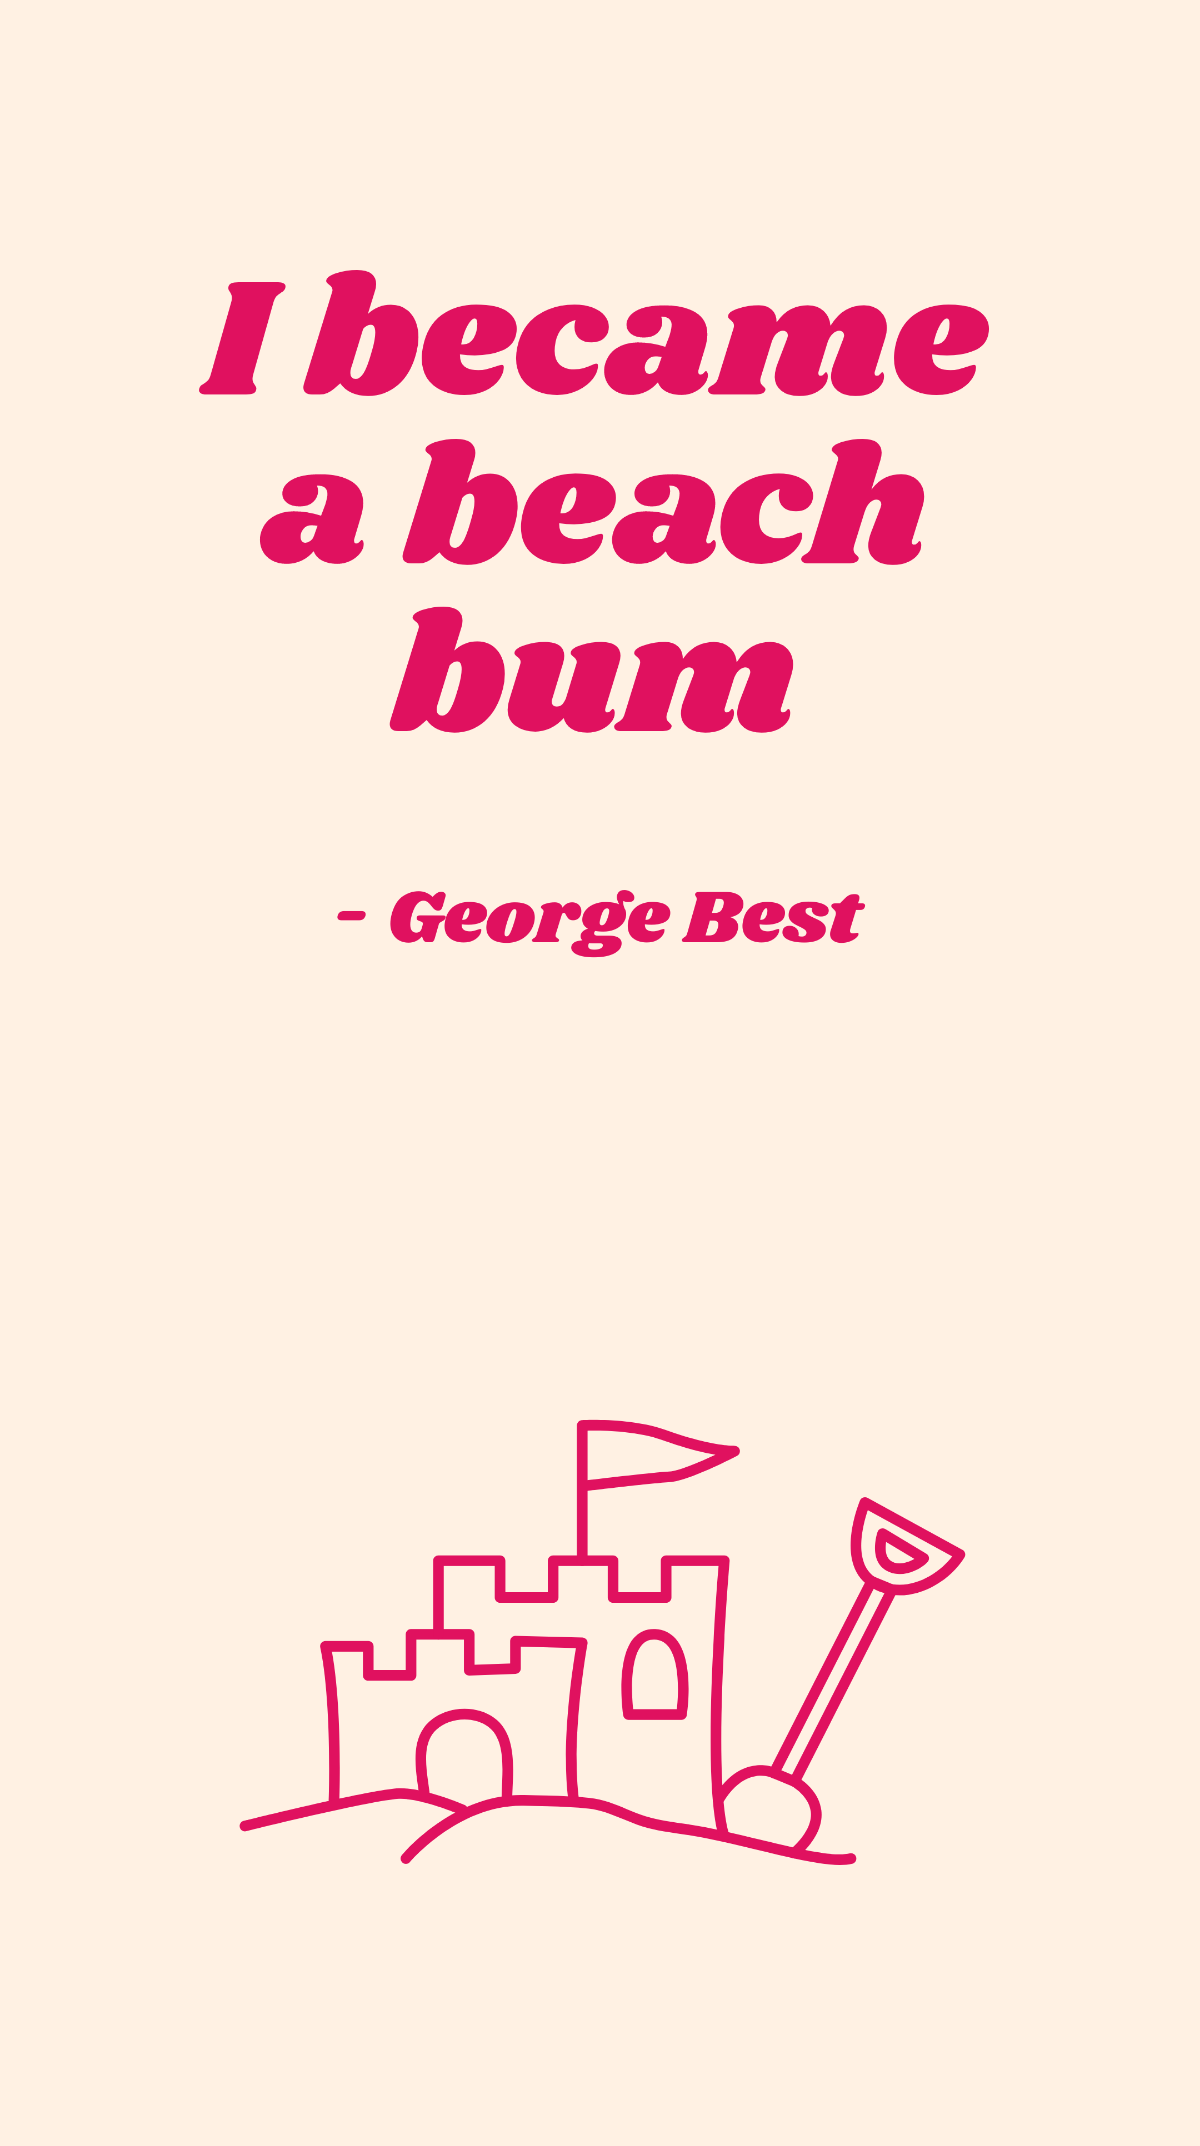 George Best - I became a beach bum Template